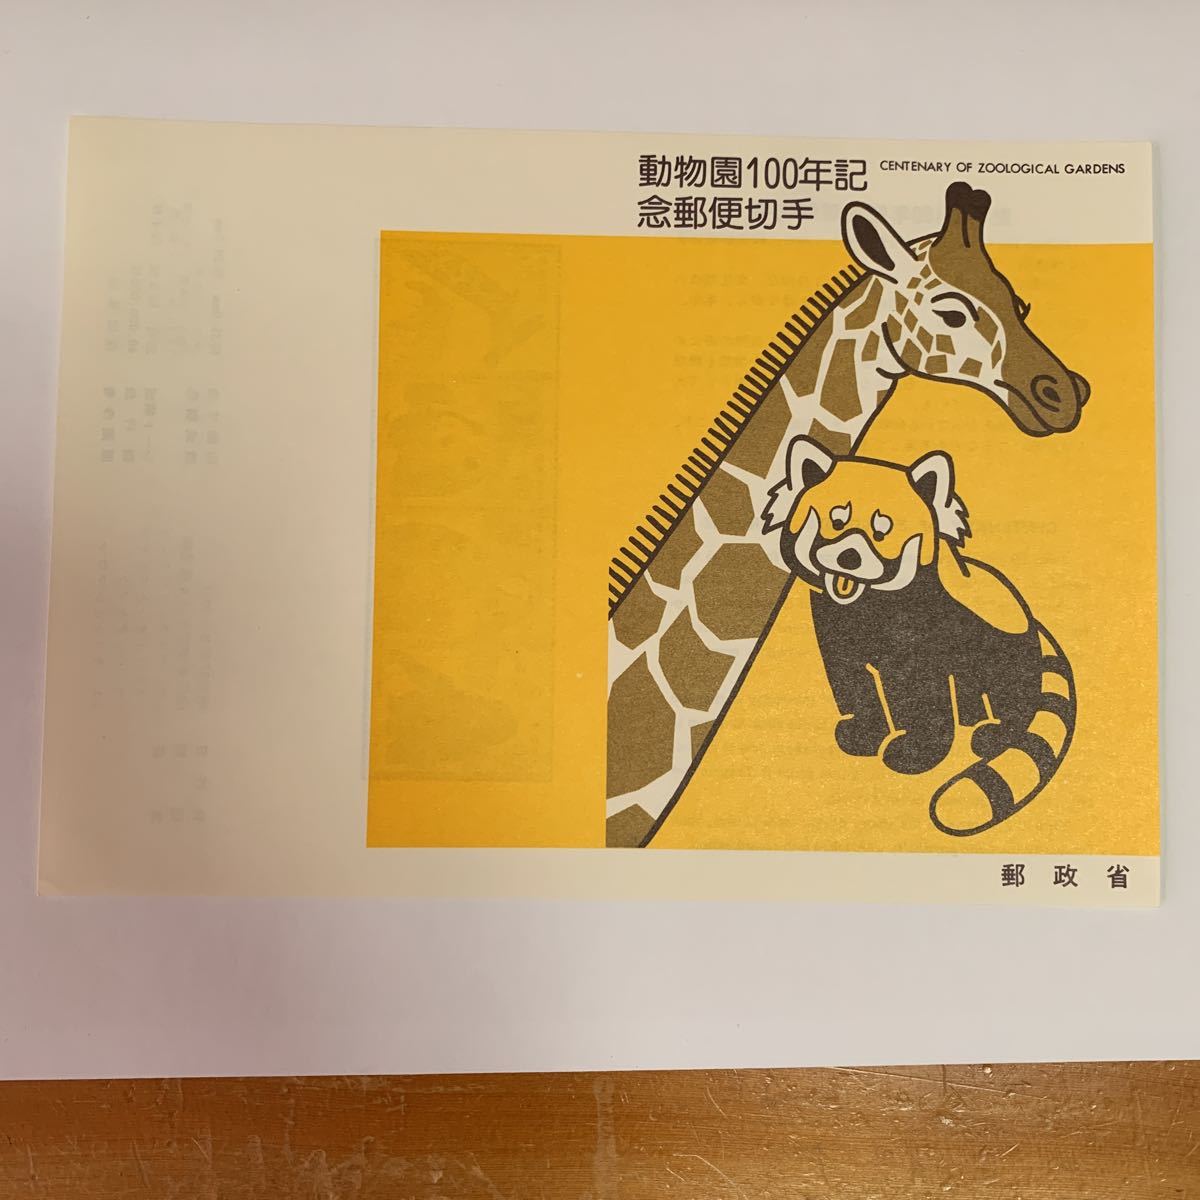 リーフレット 切手なし 1982年 郵政省 動物園100年記念郵便切手発行日 昭和57年3月20日 レア 希少 非売品 美品 送料無料_画像1